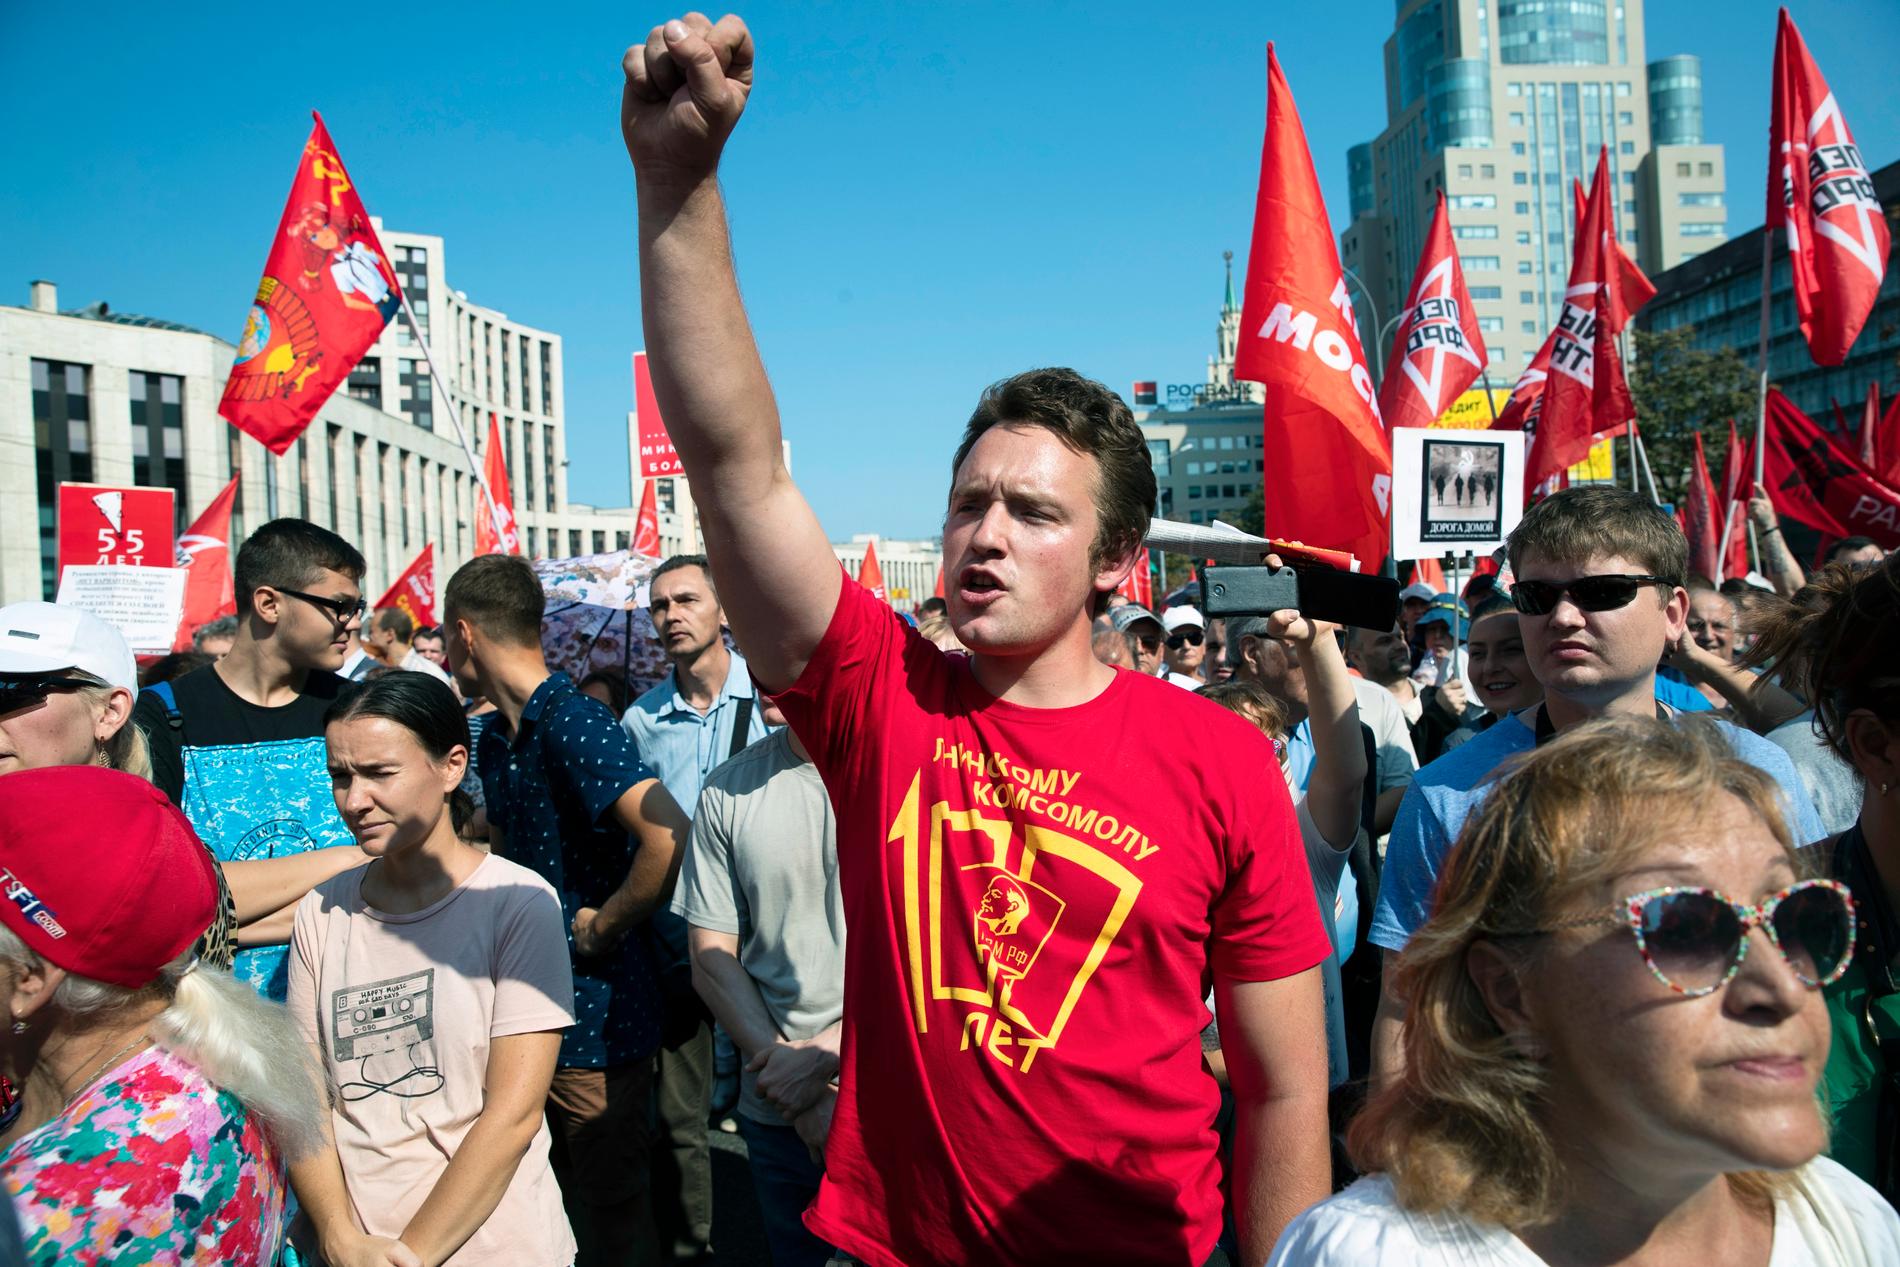 Minst 6 000 personer deltog enligt polisen i Kommunistpartiets demonstration i Moskva mot den ryska regeringens planer på en höjning av pensionsåldern.